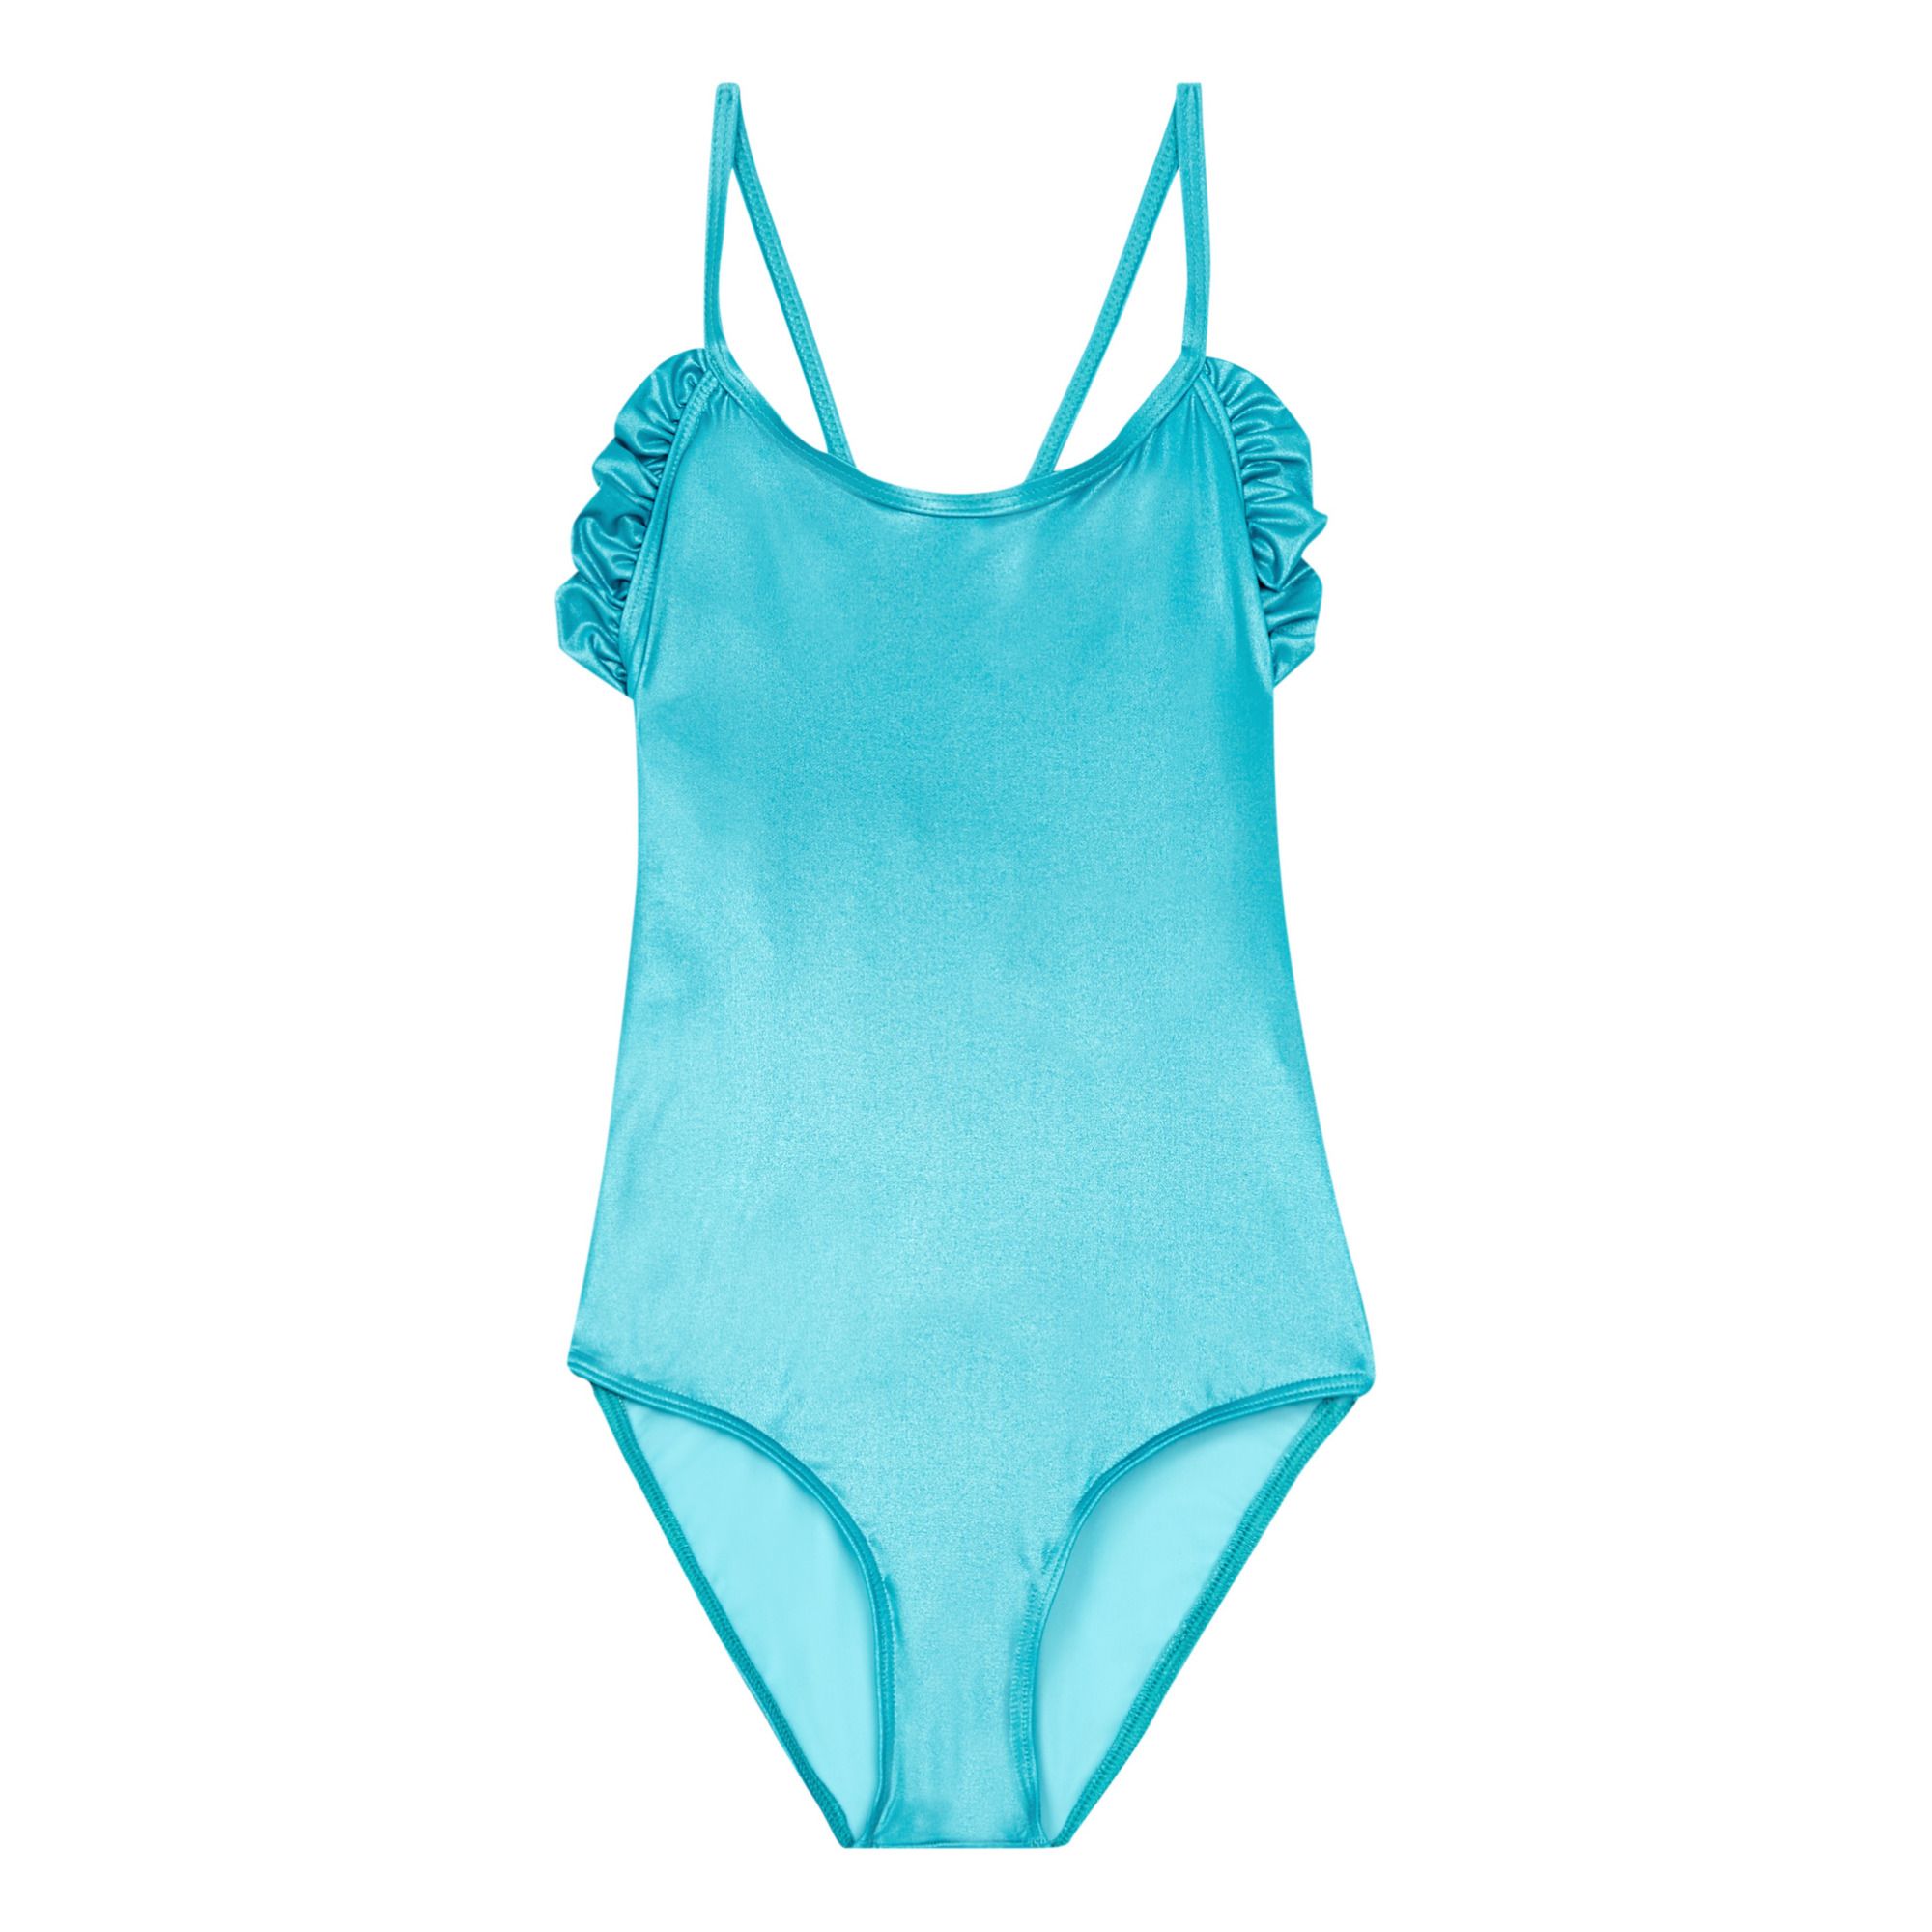 Lison Paris - Sorbet Swimsuit - Turquoise | Smallable